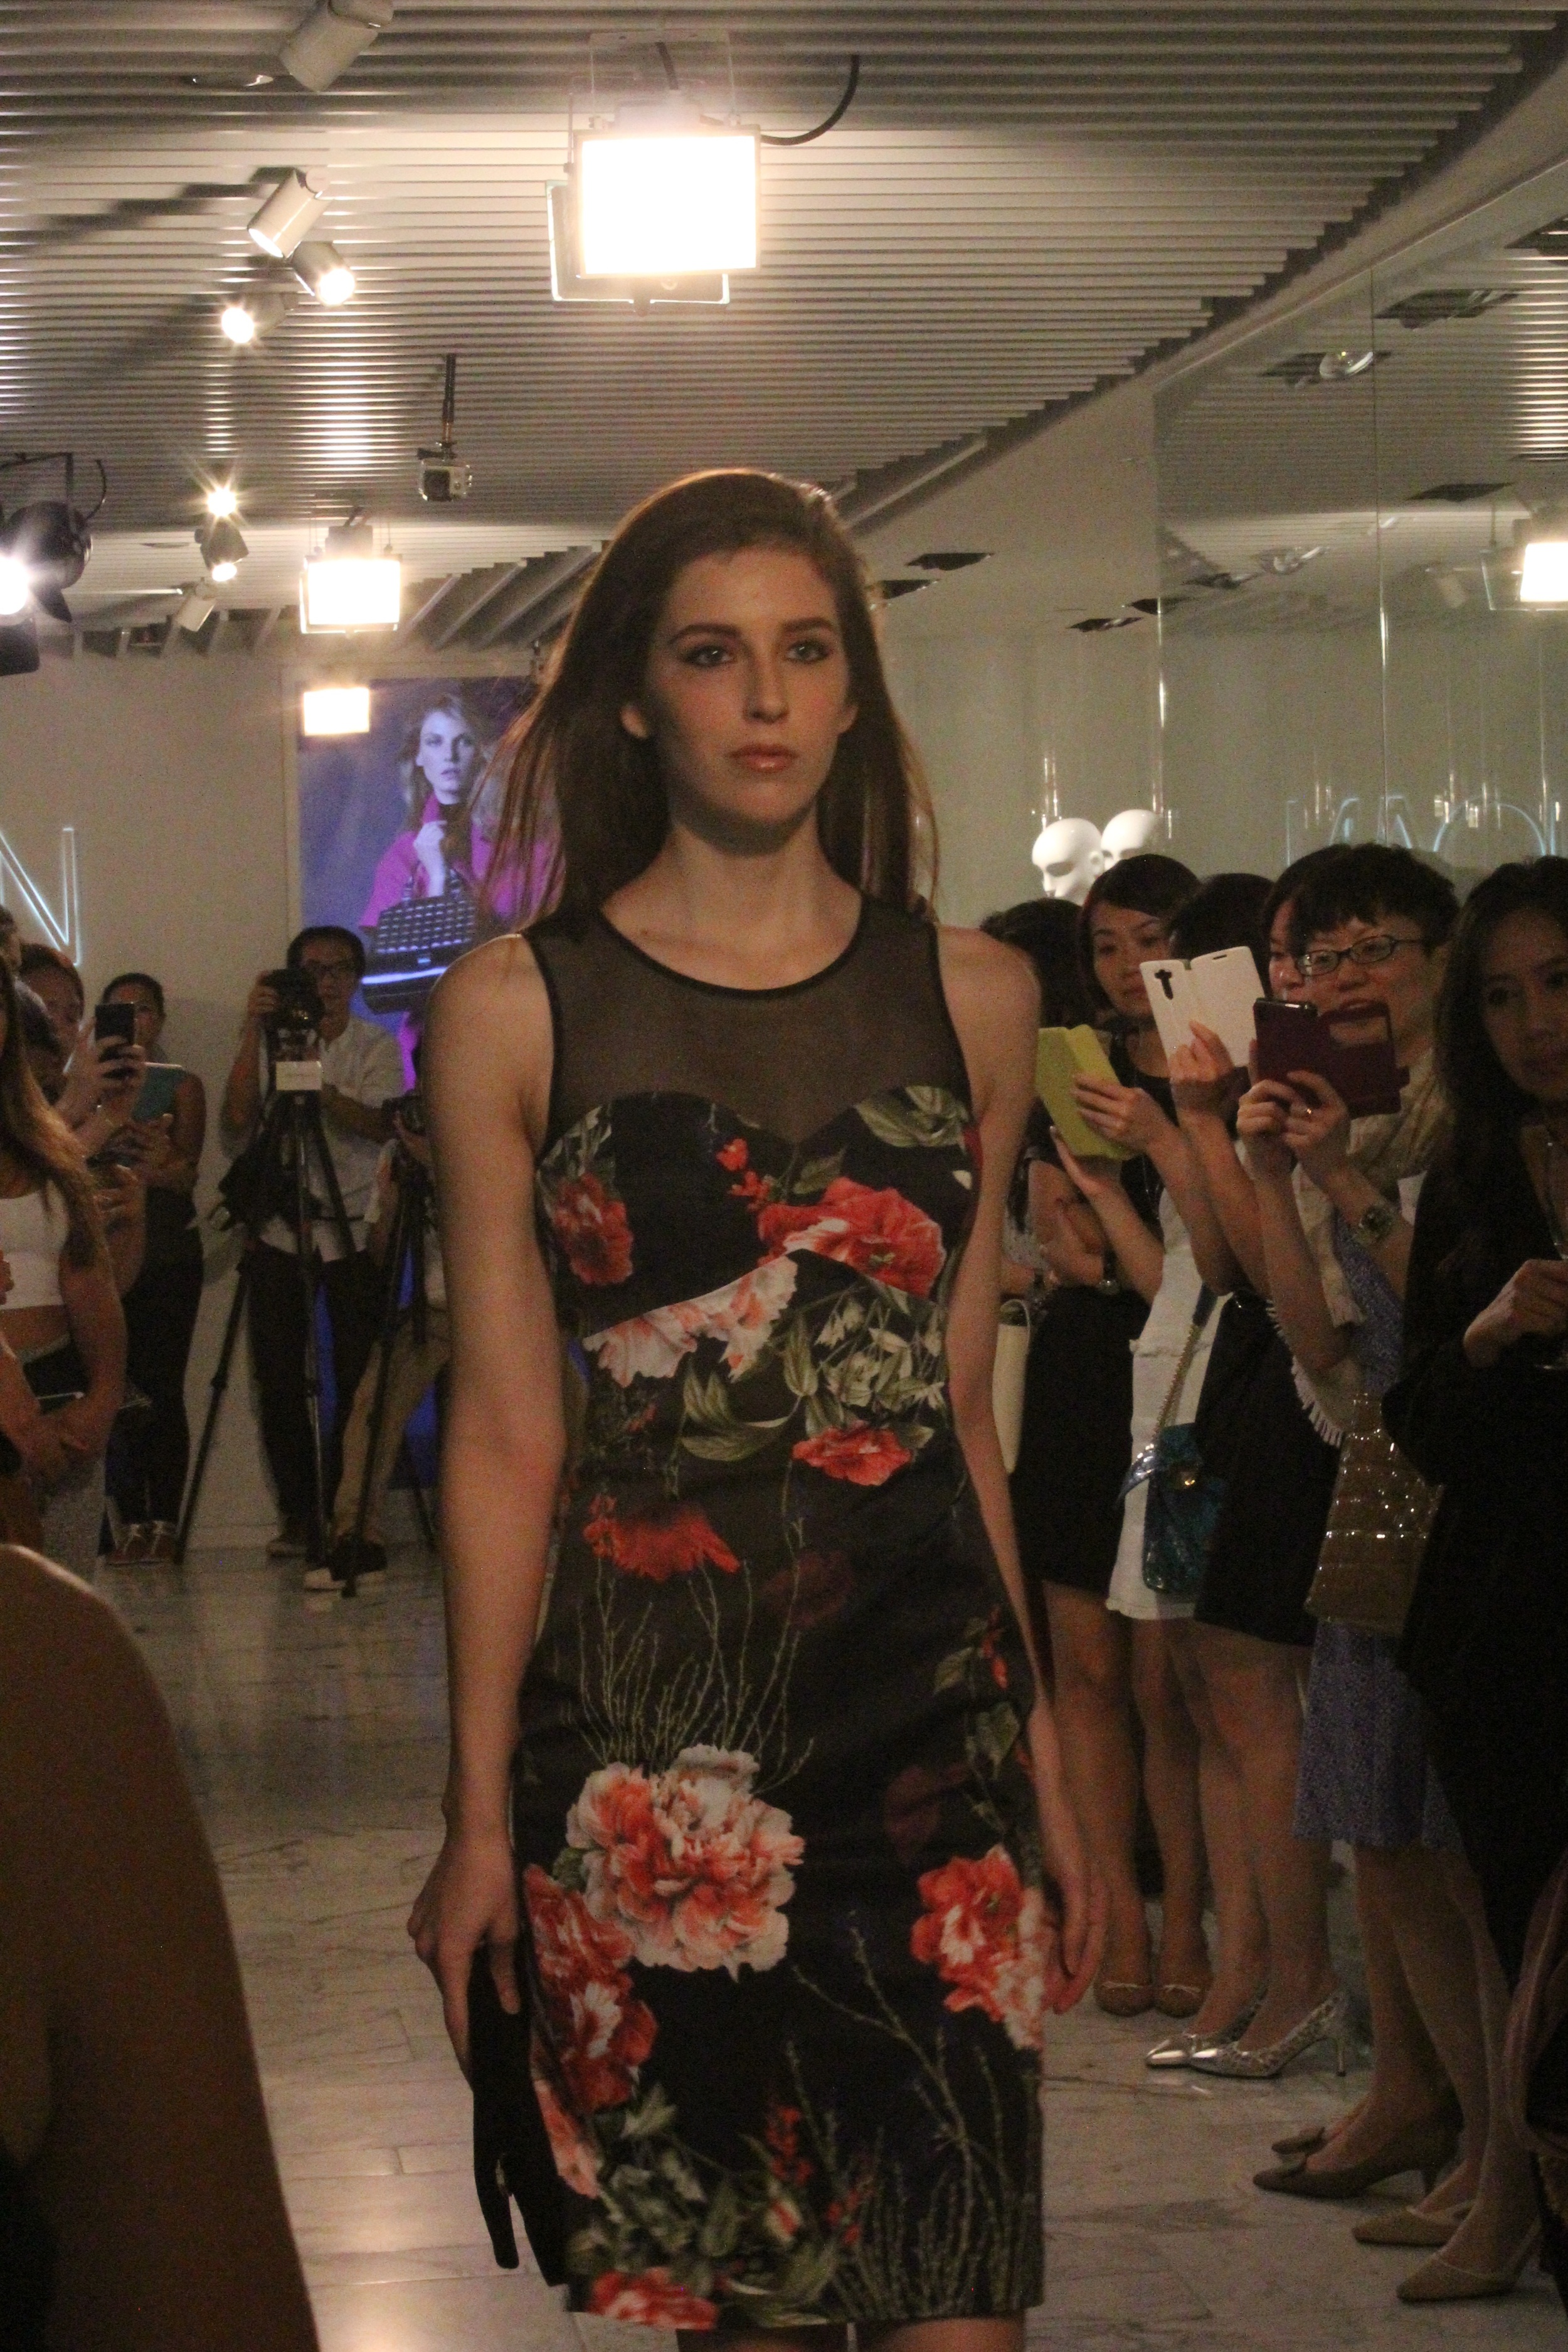 Karen Millen F/W 2014 Fashion Show — The Bold Concept